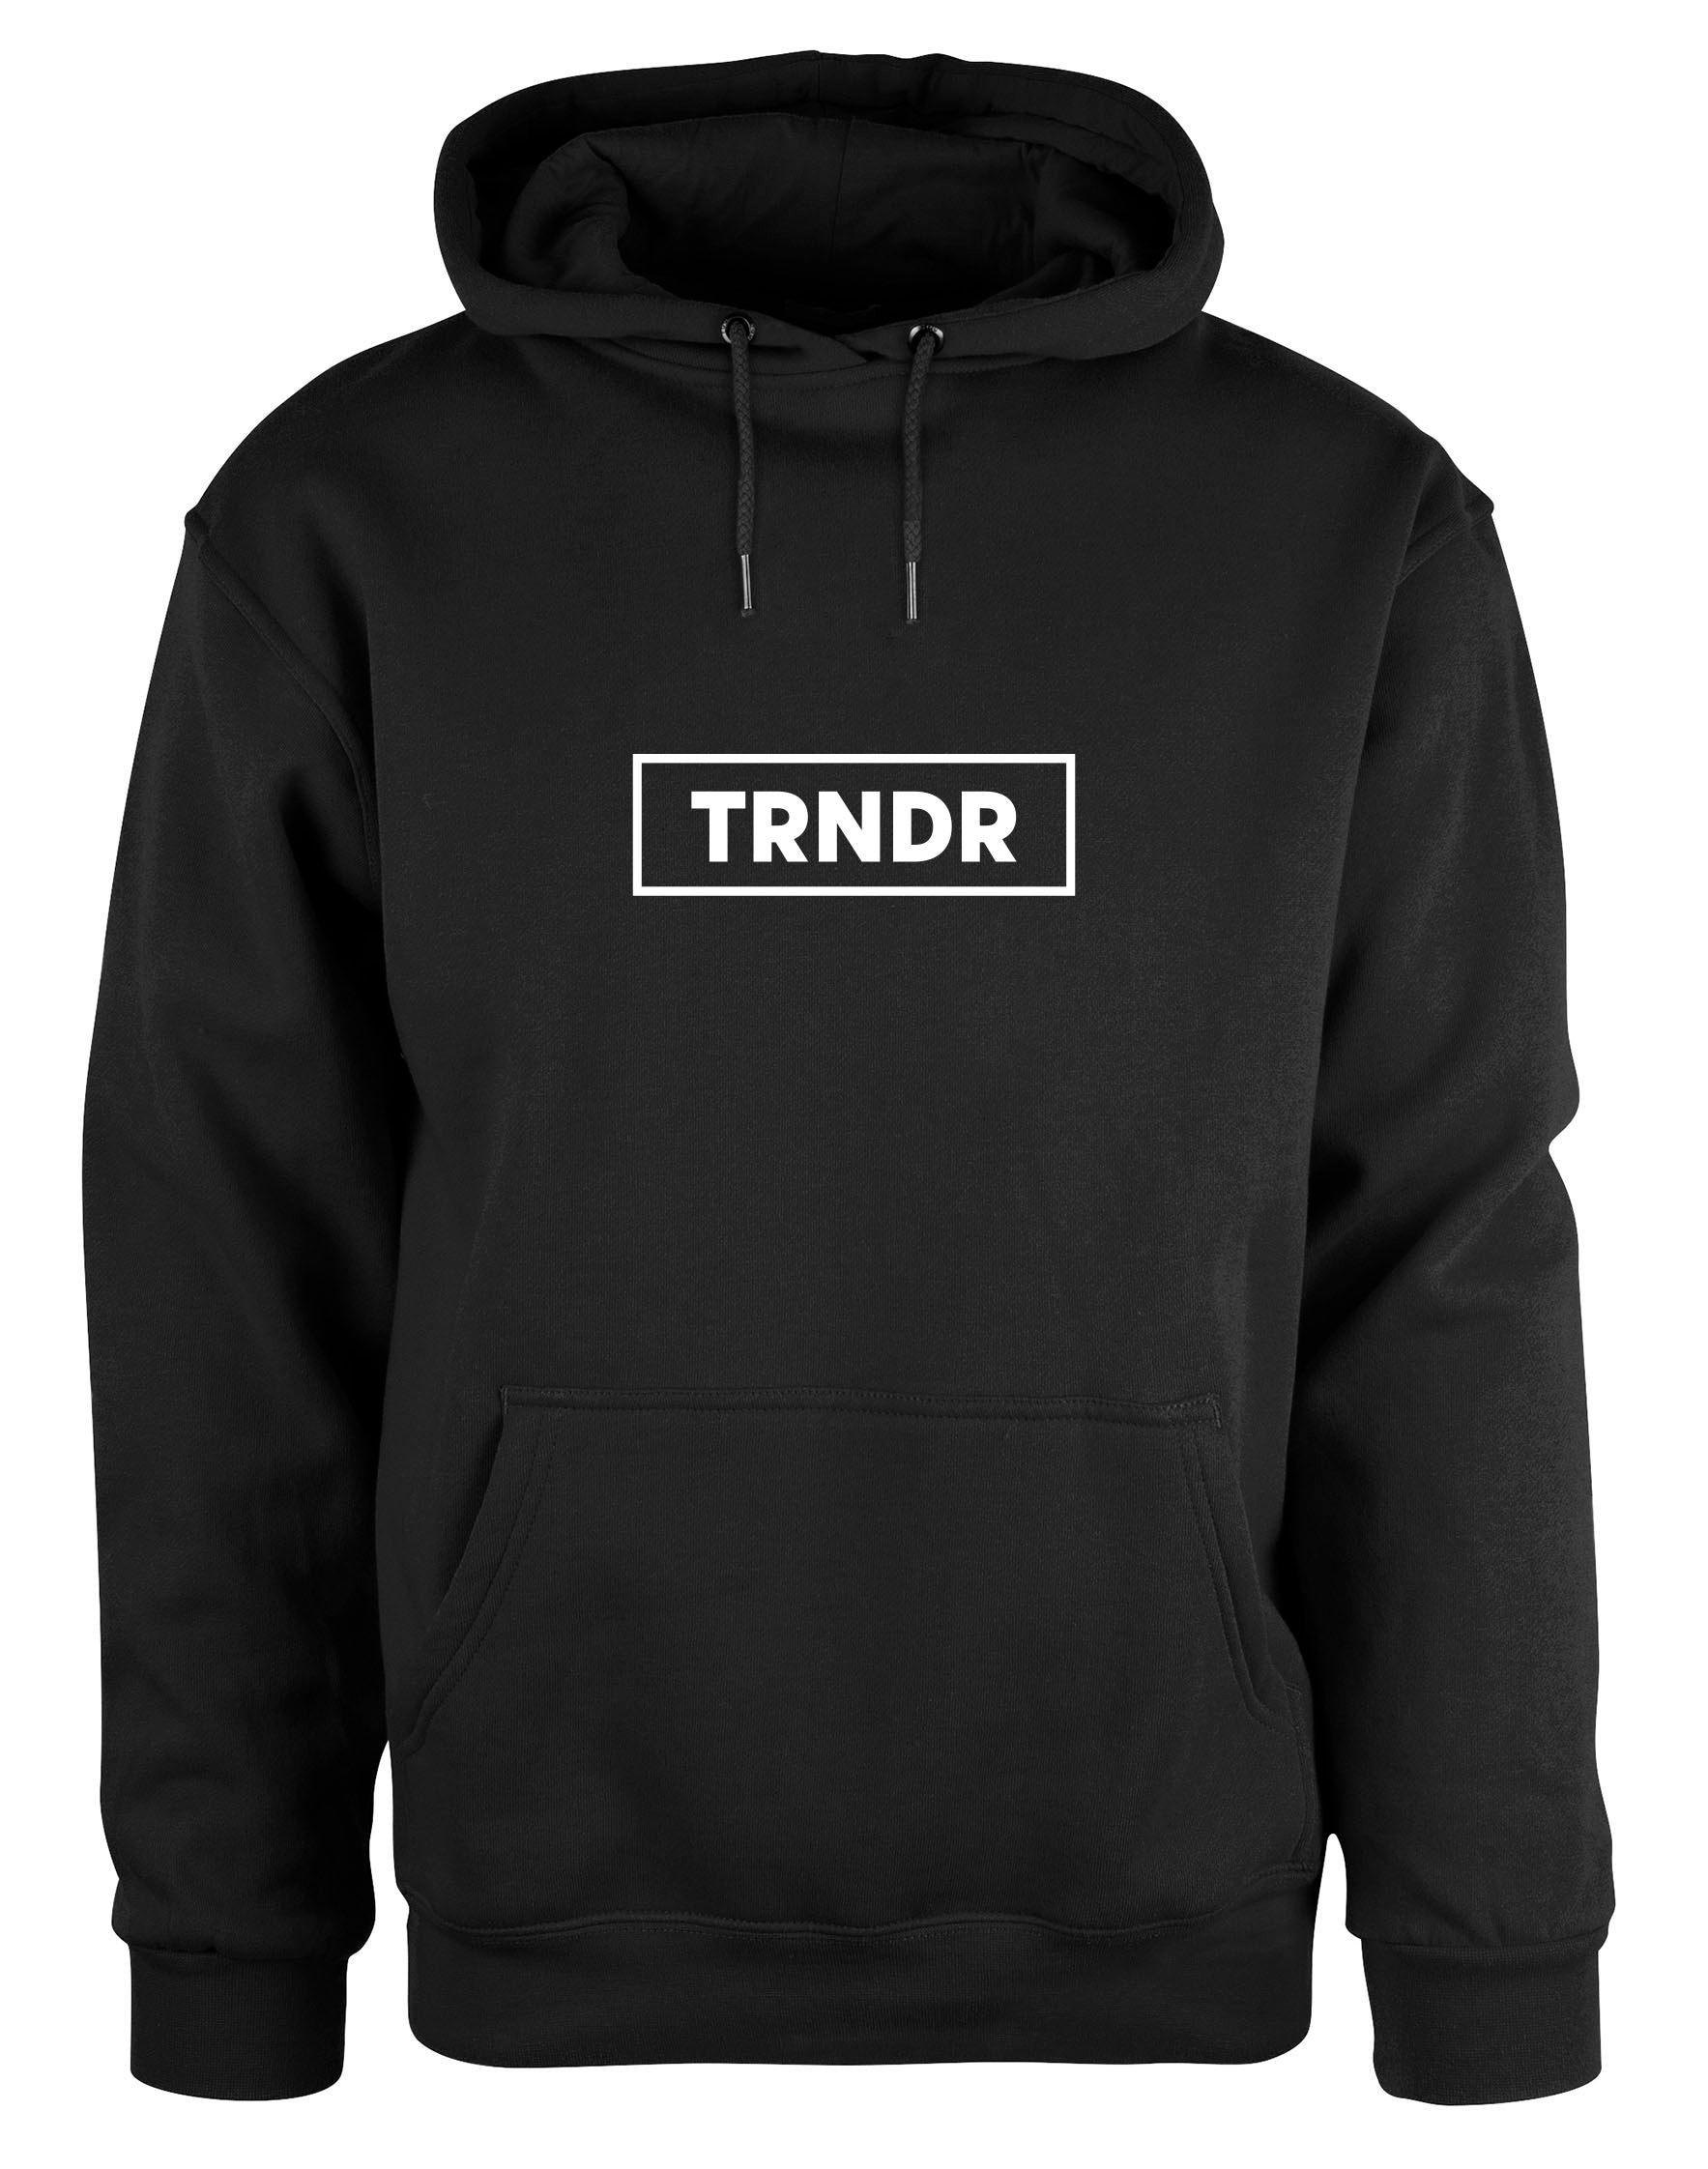 TRNDR hoodie